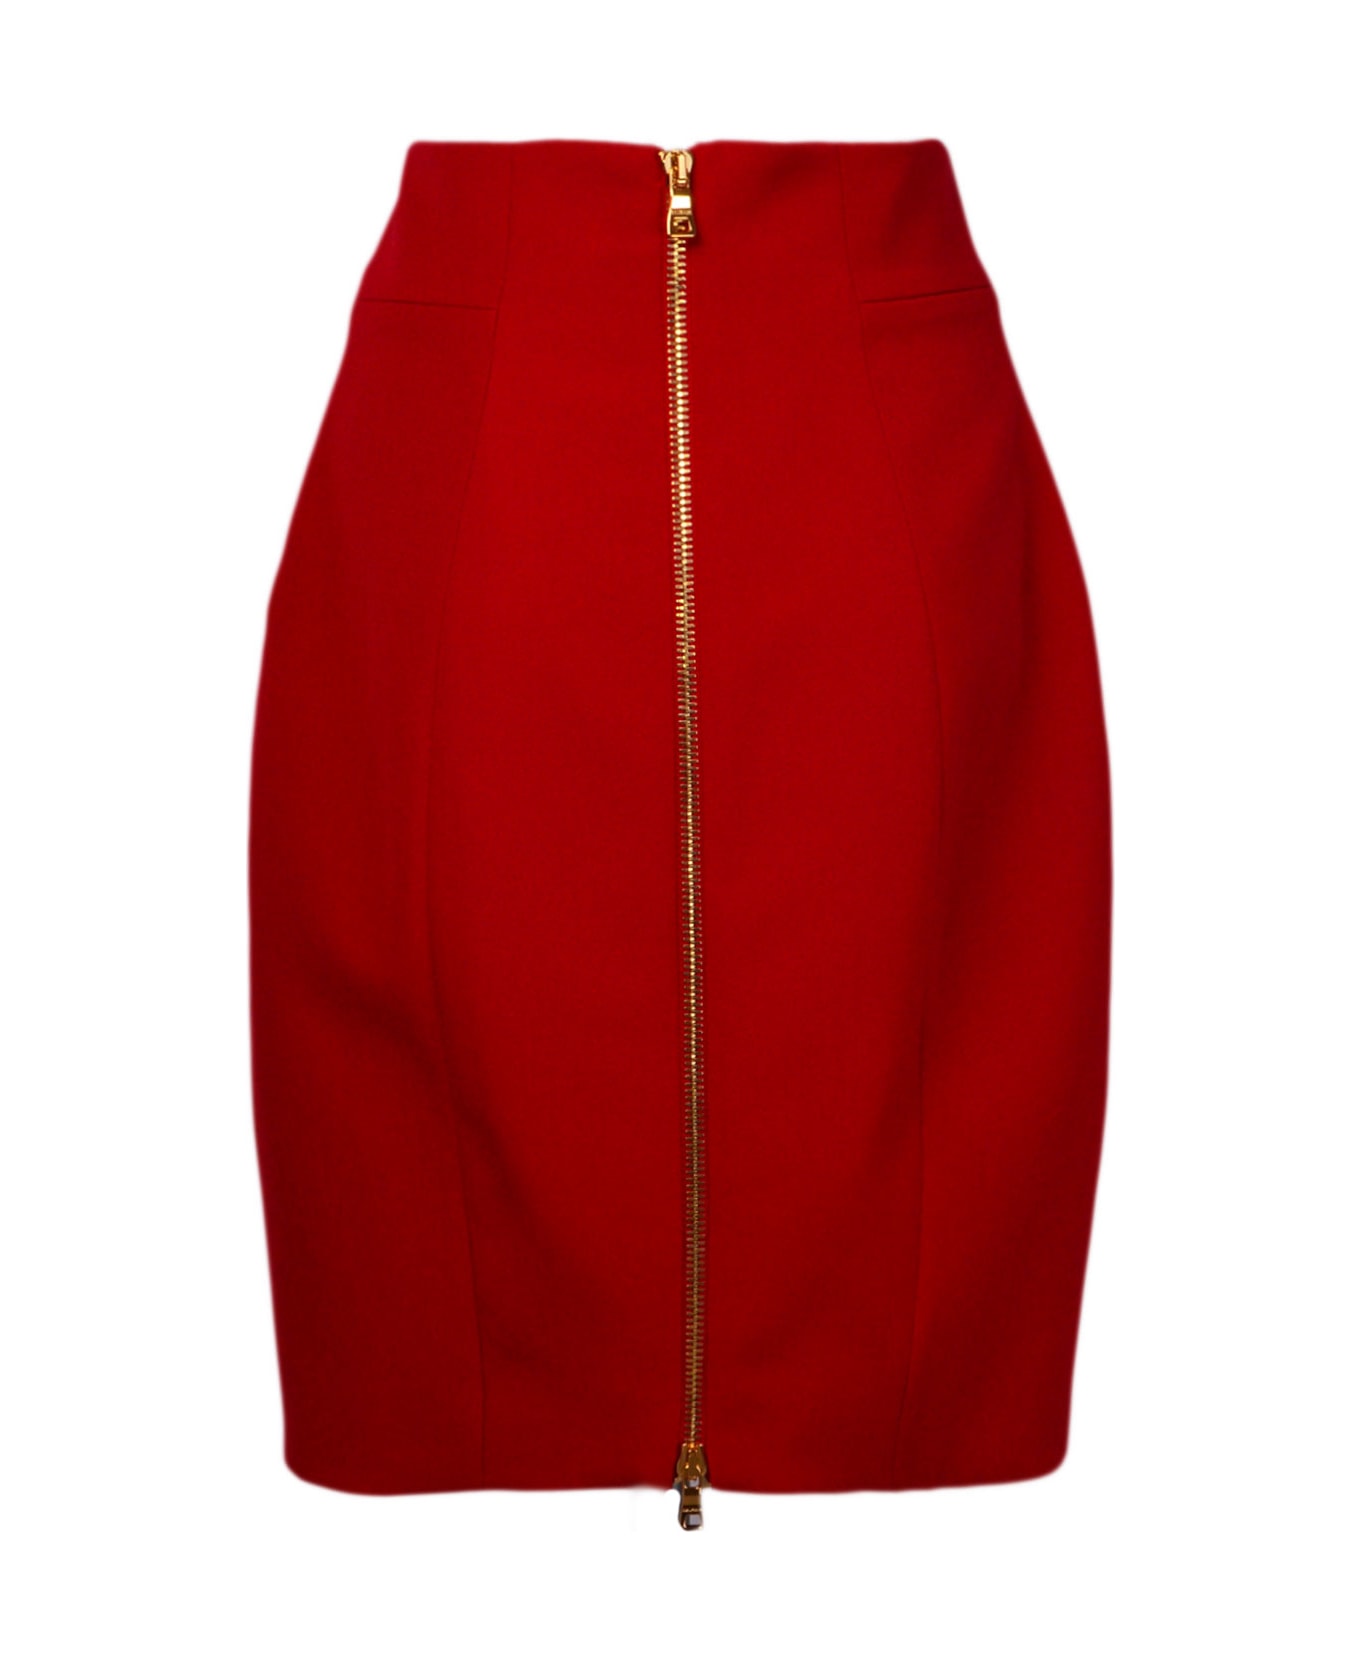 Balmain Skirt - Red スカート